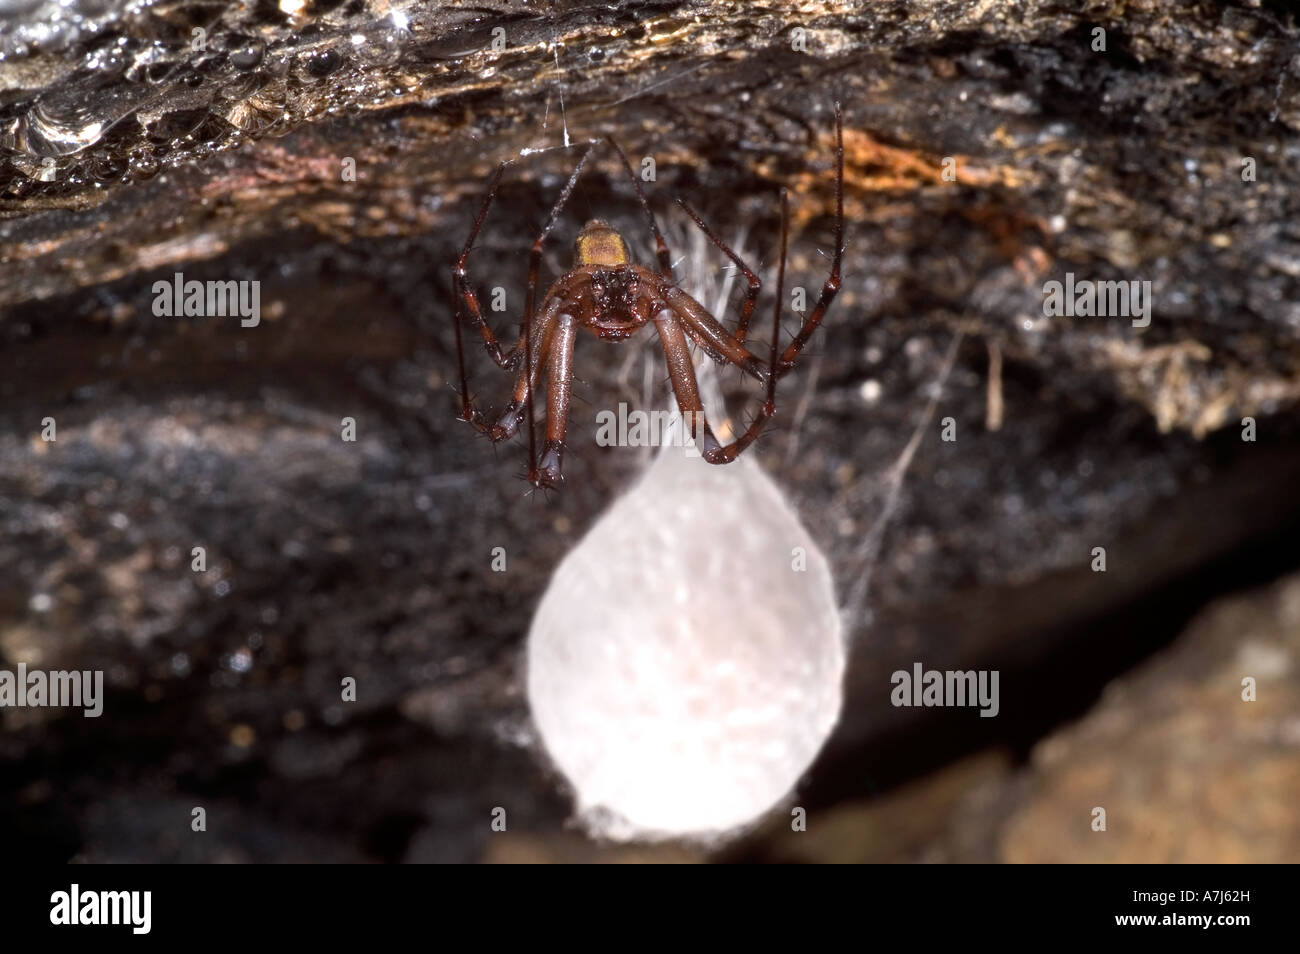 Cave spider meta menardi with egg case Stock Photo